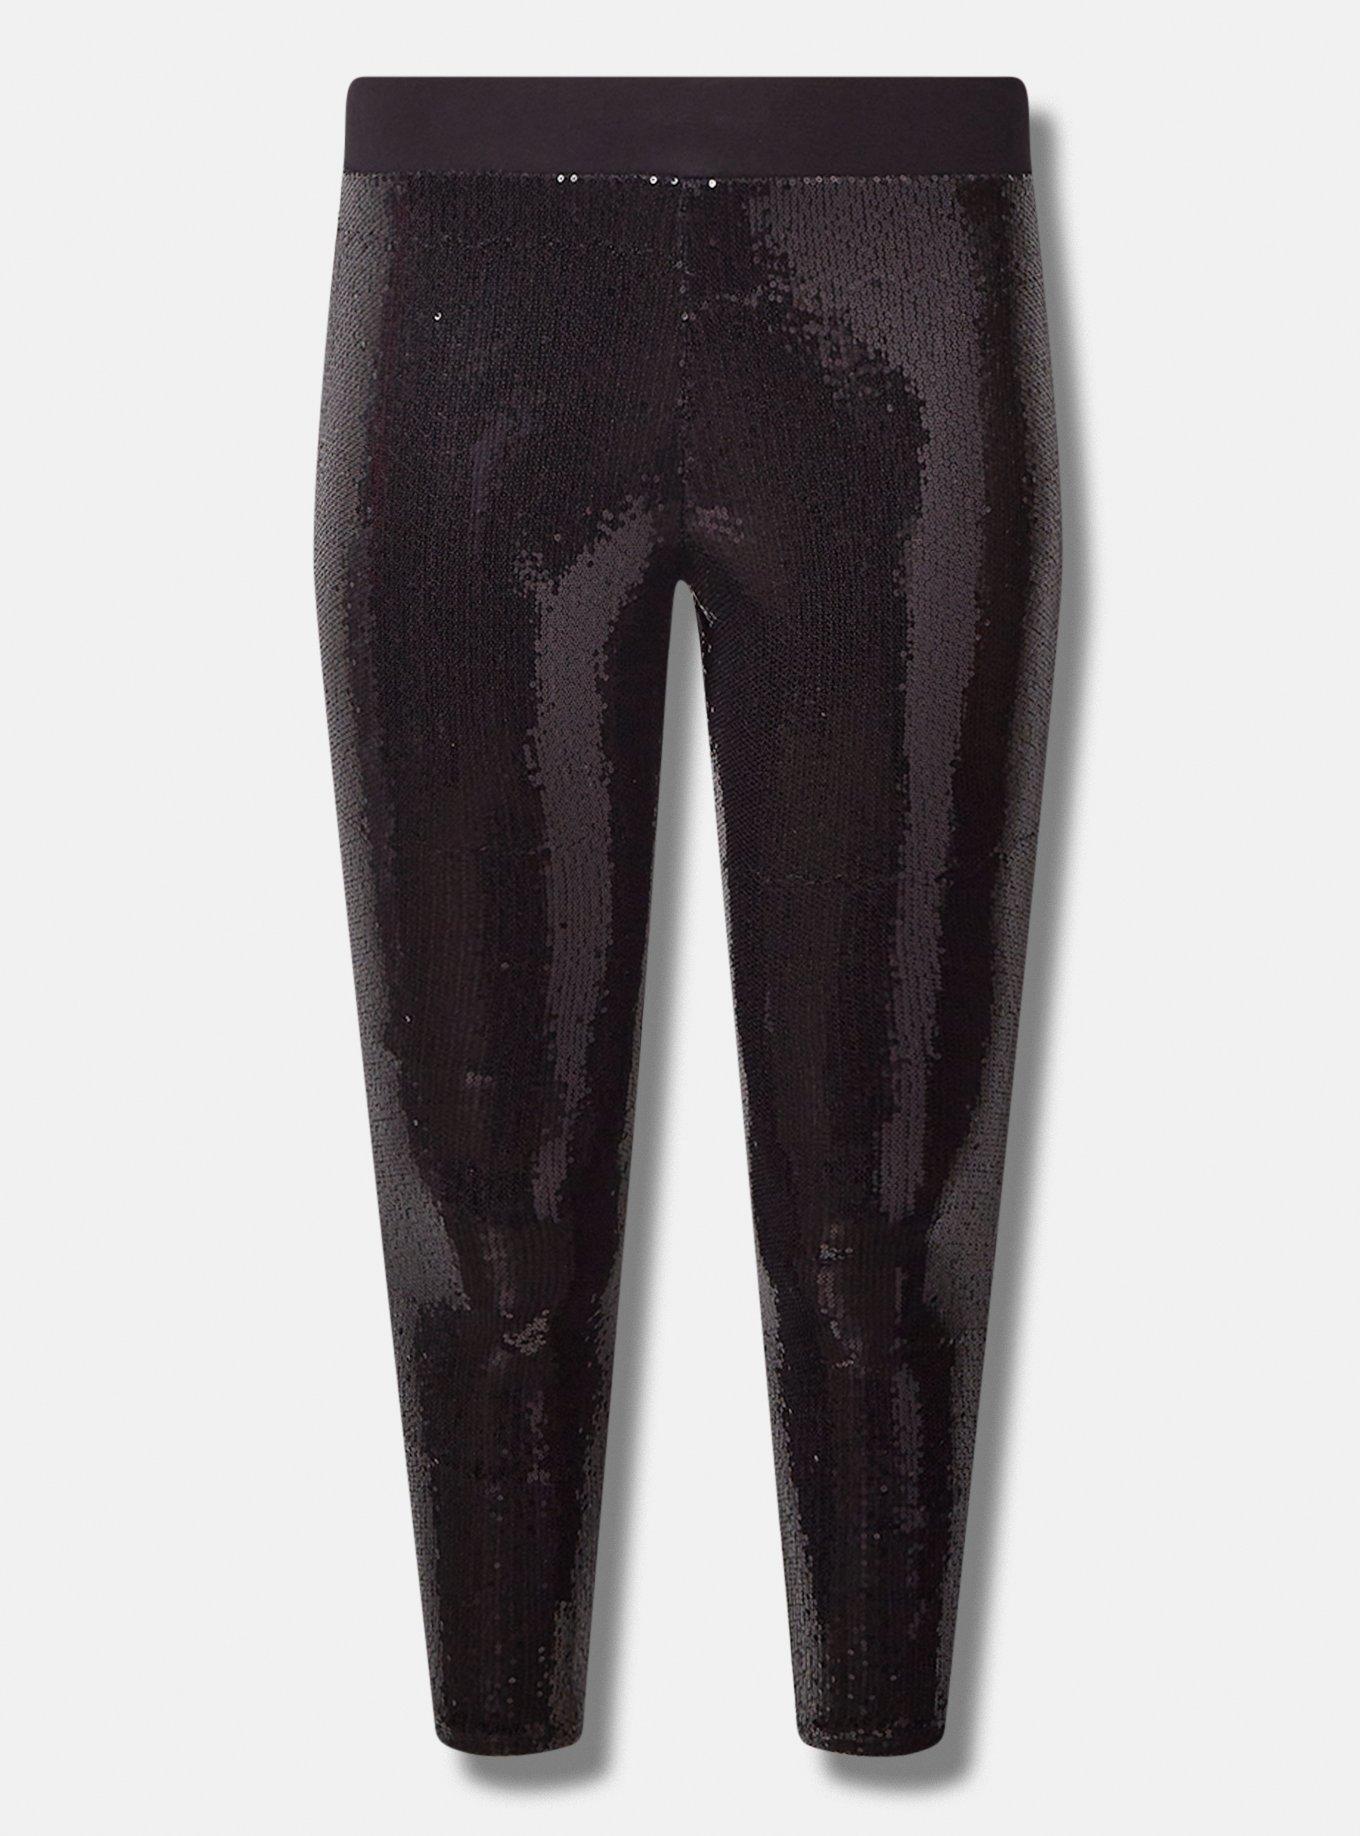 Plus Size Black Sequin Stretch Leggings